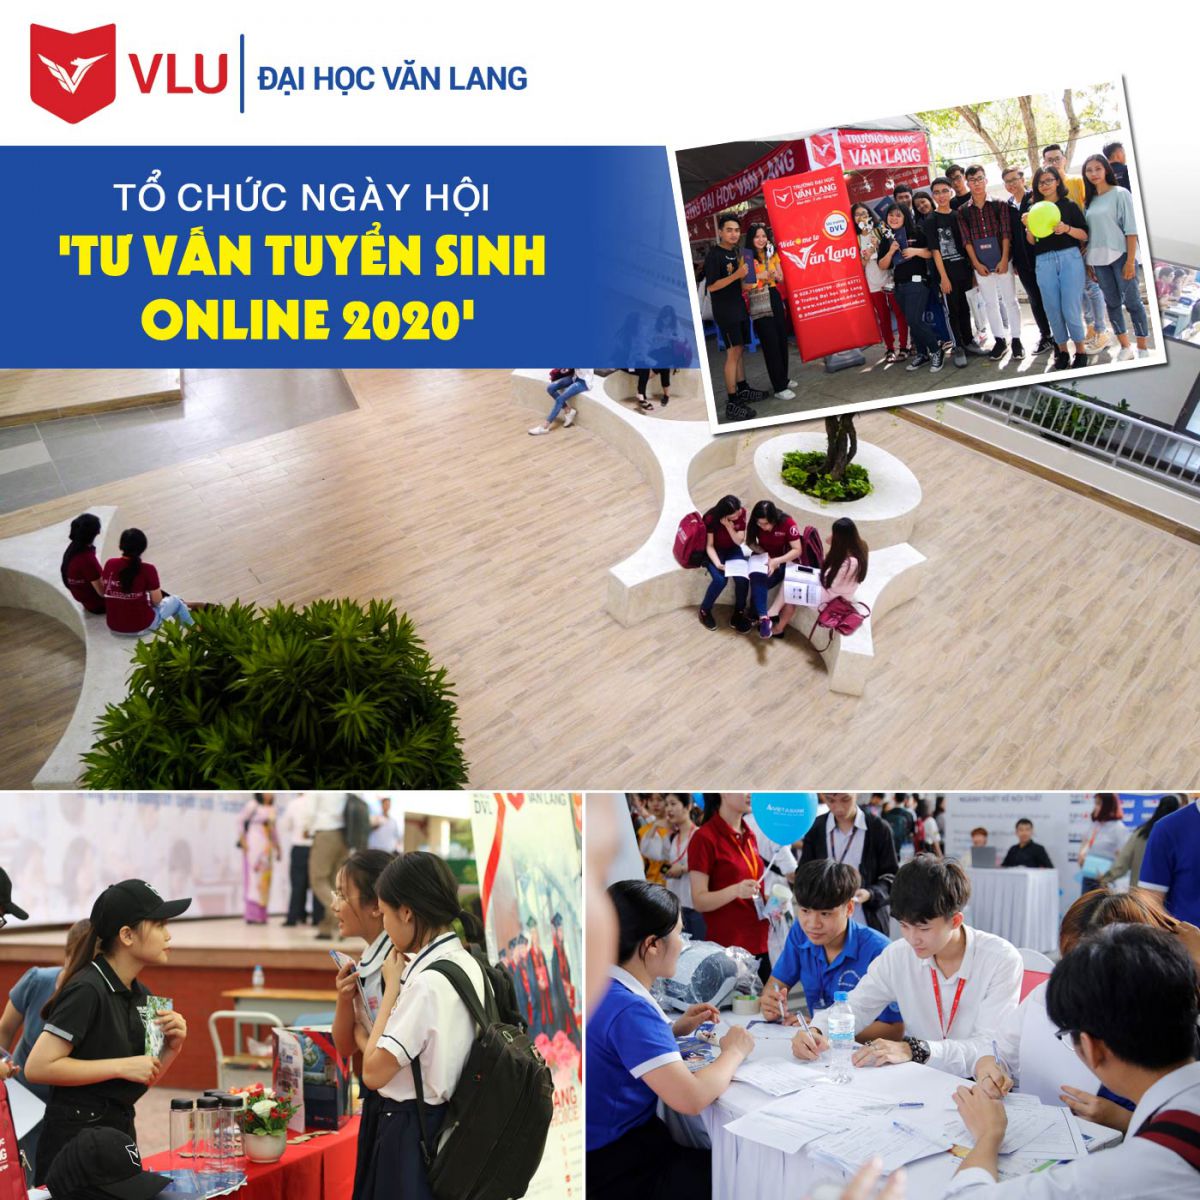 Đại học Văn Lang tổ chức ngày hội Tư vấn tuyển sinh online 2020 - Ảnh 1